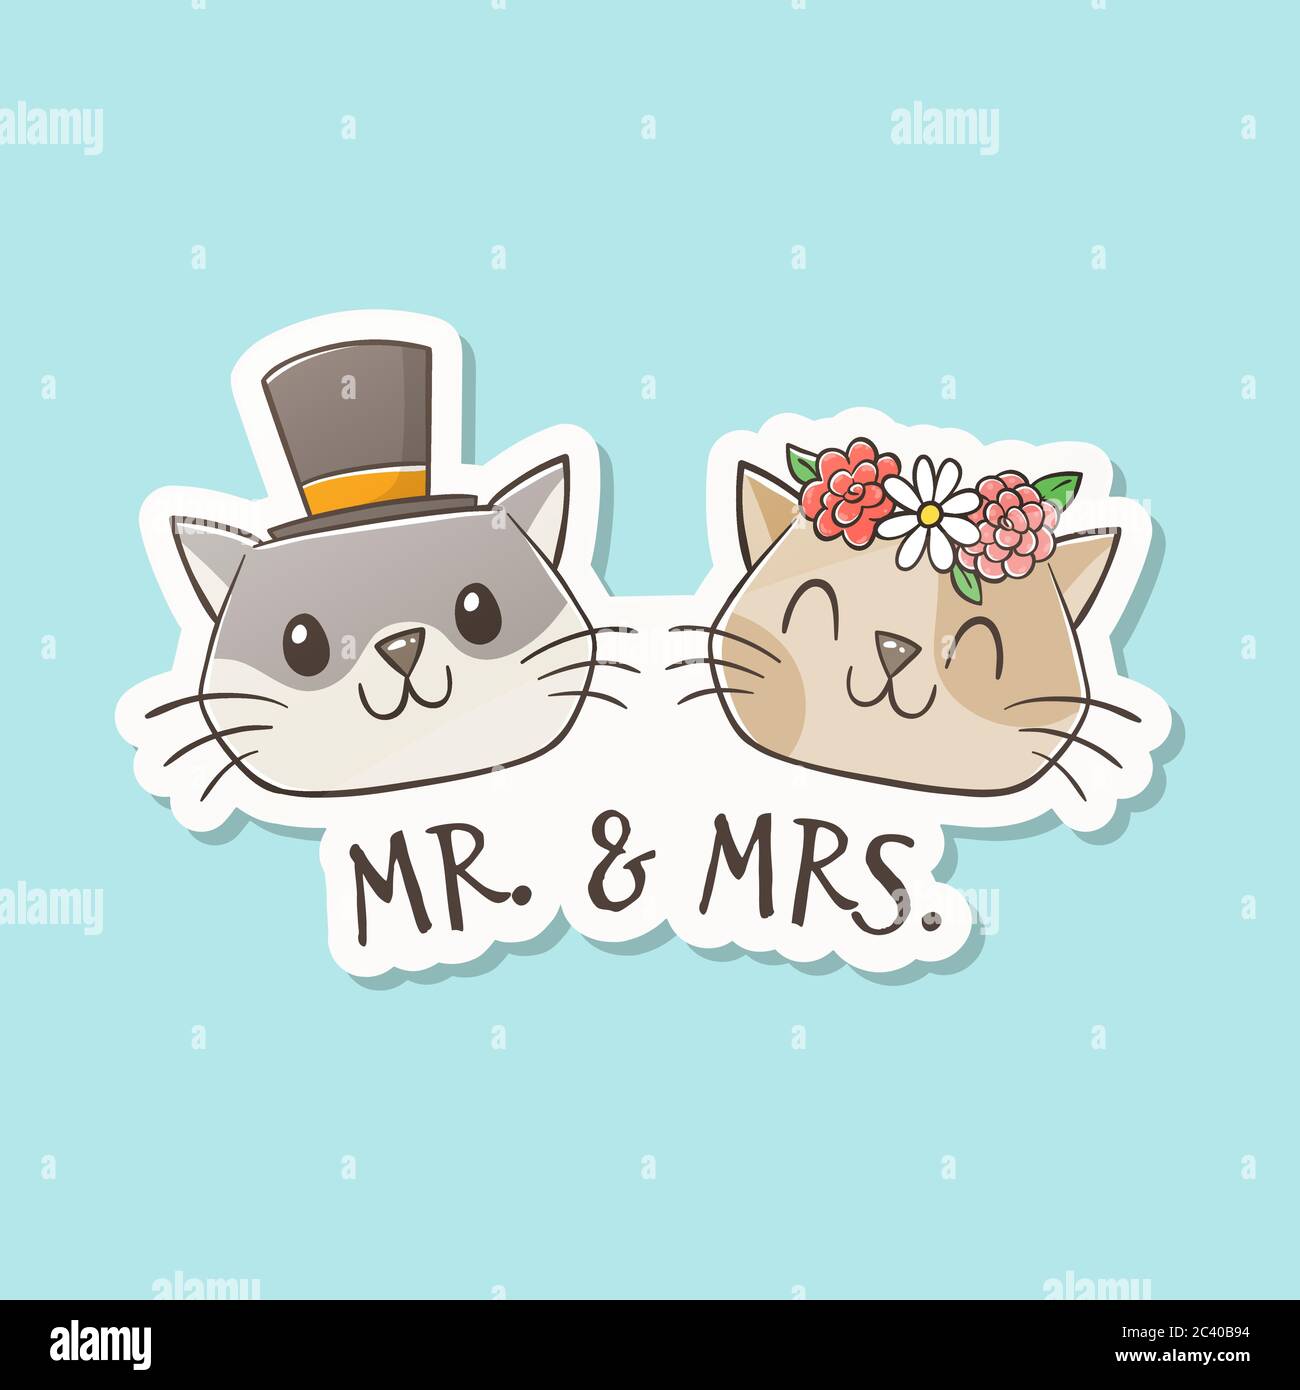 Il signor e la signora Cat si sposano. Graziosi gatti disegnati a mano con cappelli da cerimonia nuziale. Concetto di amanti dei gatti. Concetto di coppia e matrimonio. Vettore cartoon Illustrazione Vettoriale